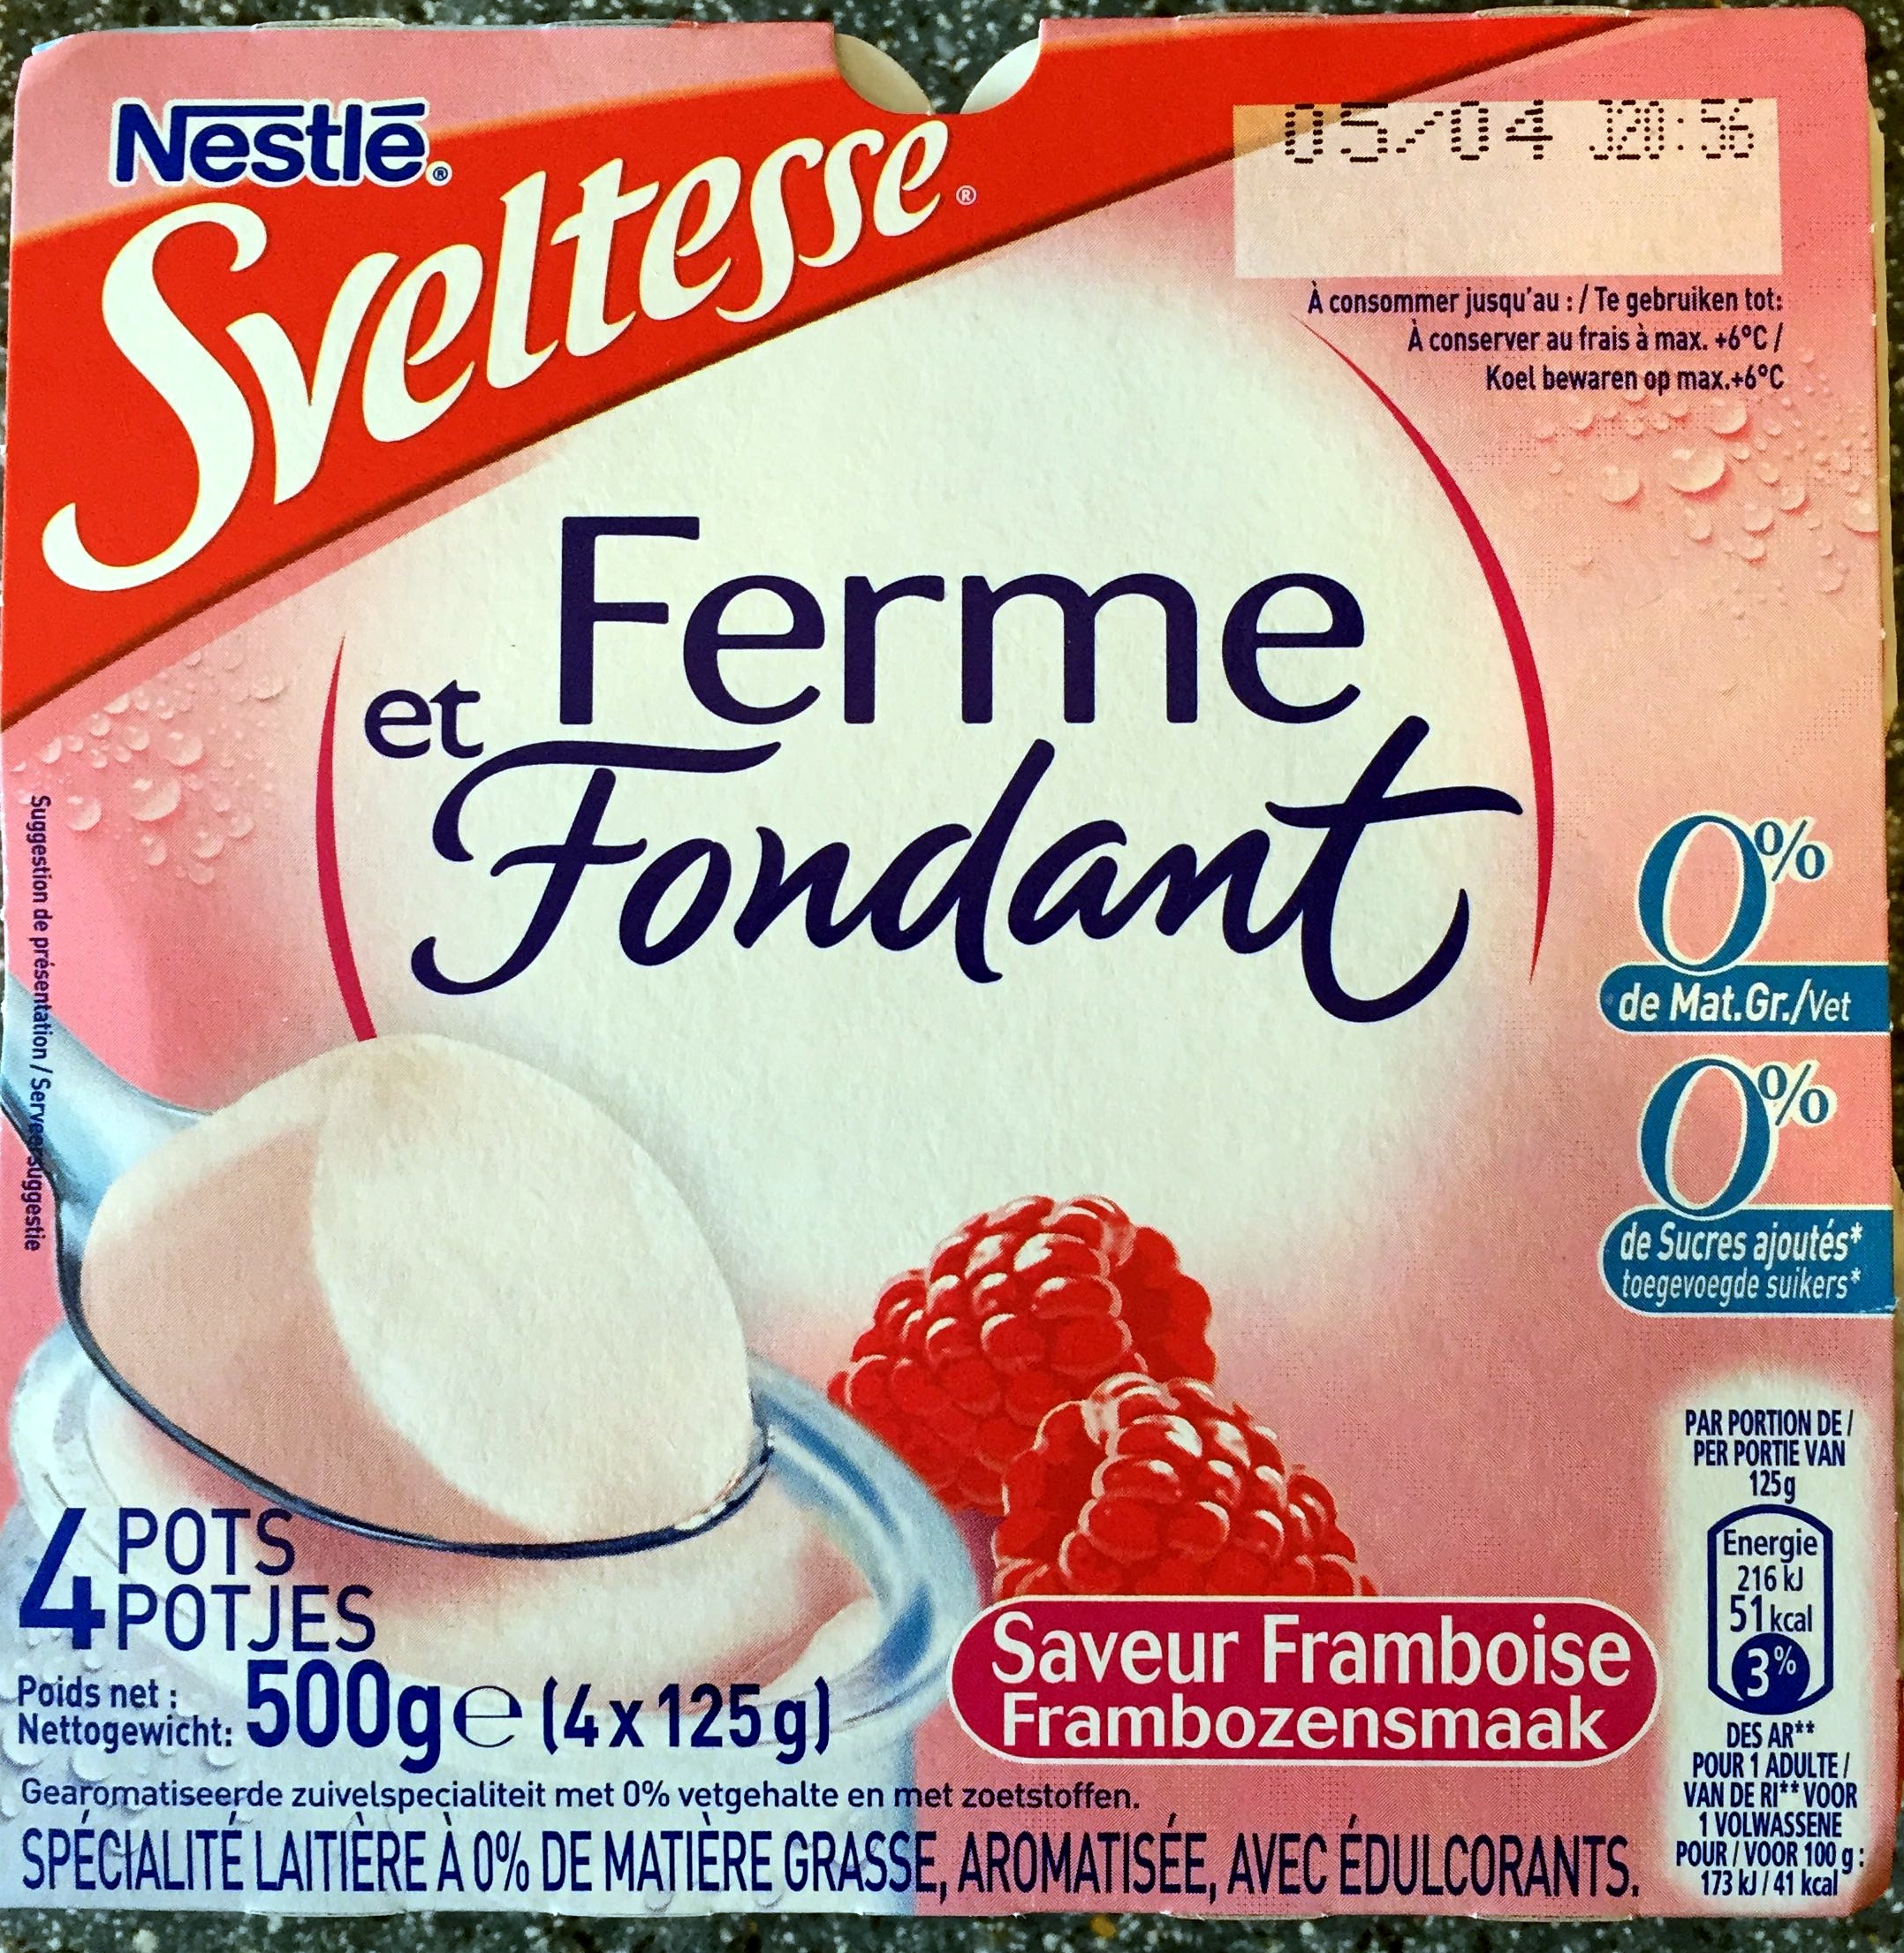 Ferme et Fondant (0 % MG, 0 % de Sucres ajoutés), Saveur Framboise (4 Pots) - Product - fr